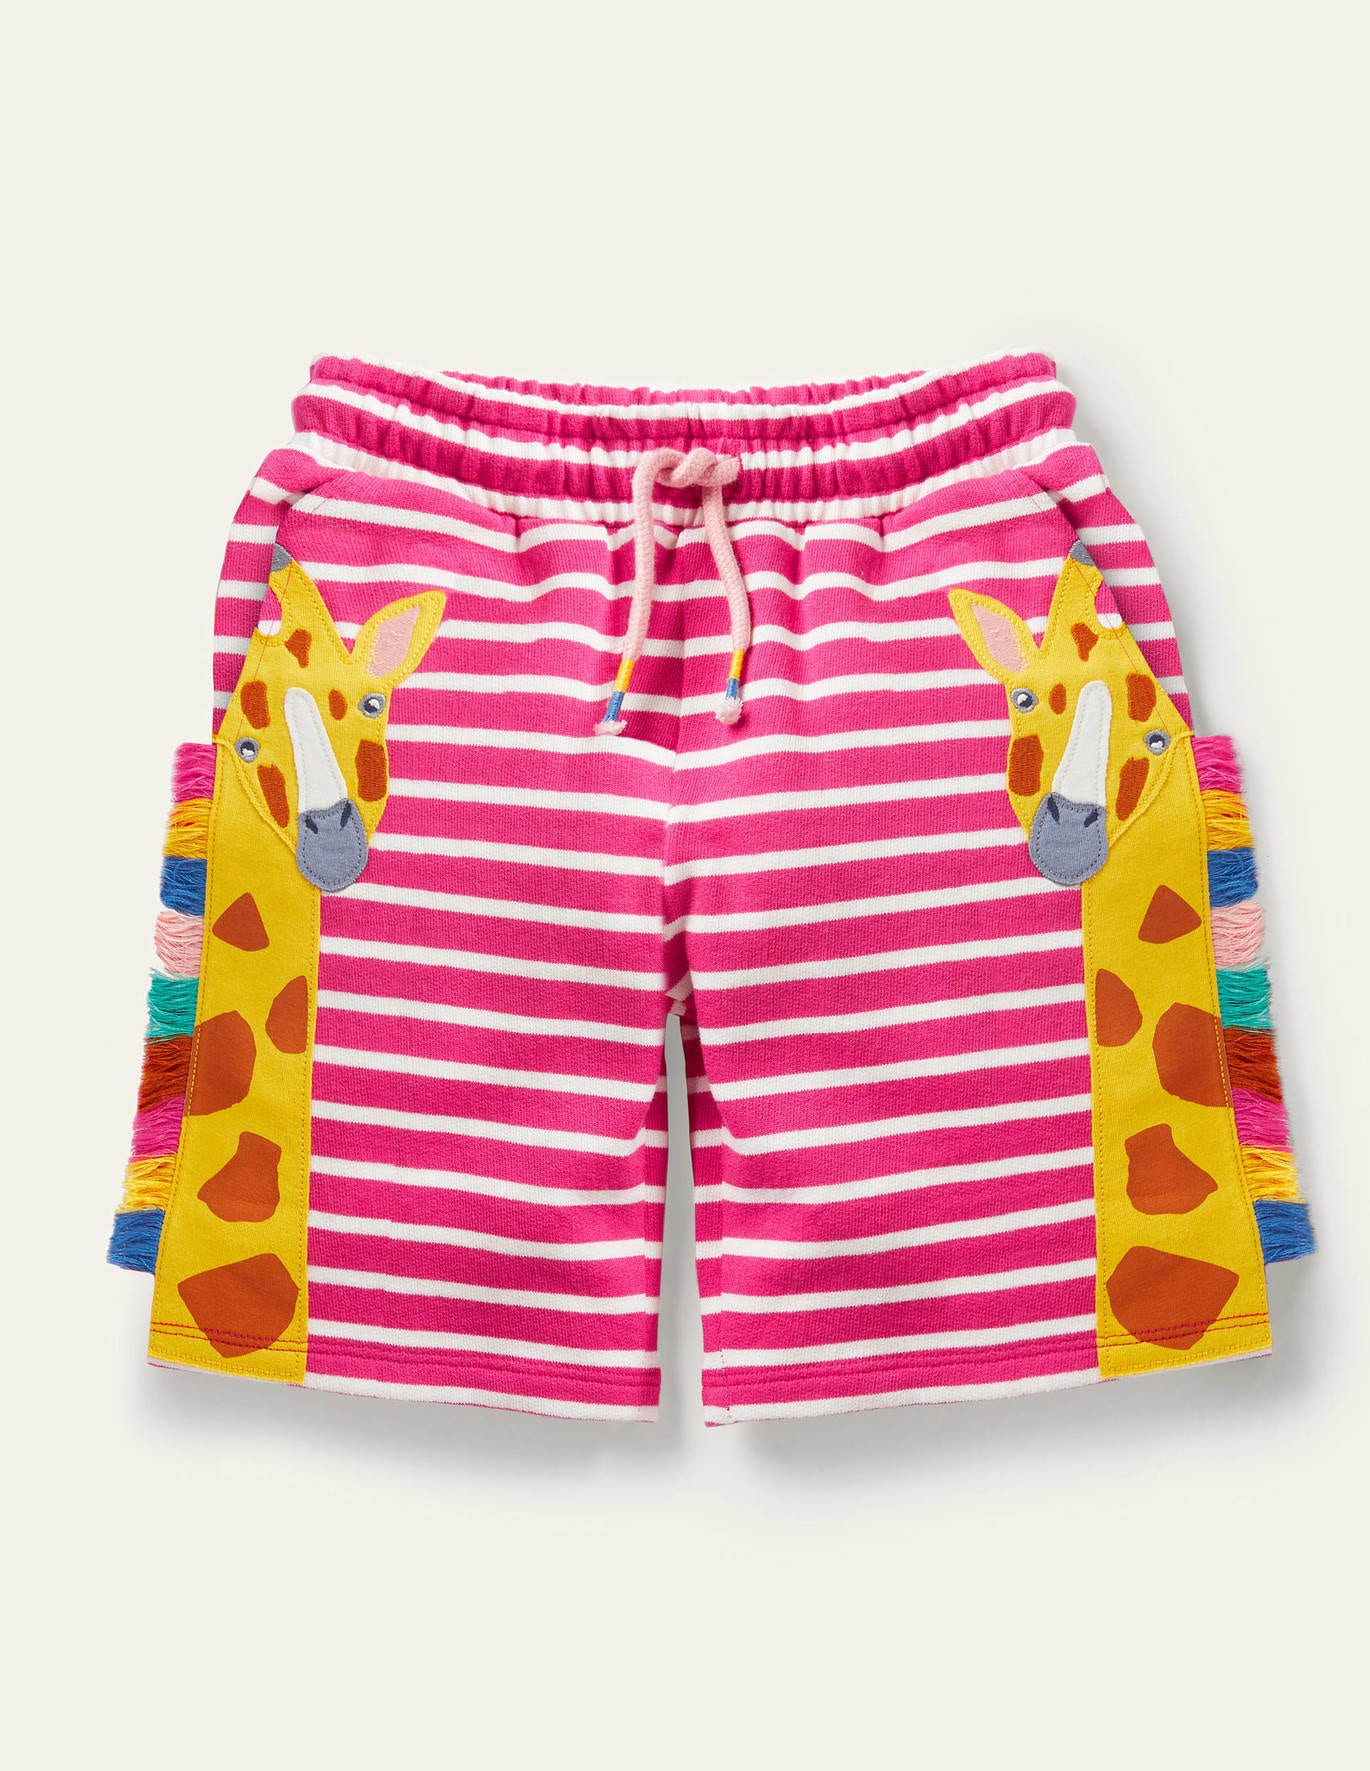 Boden Jersey Applique Shorts - Tutti Fruity Pink Giraffe